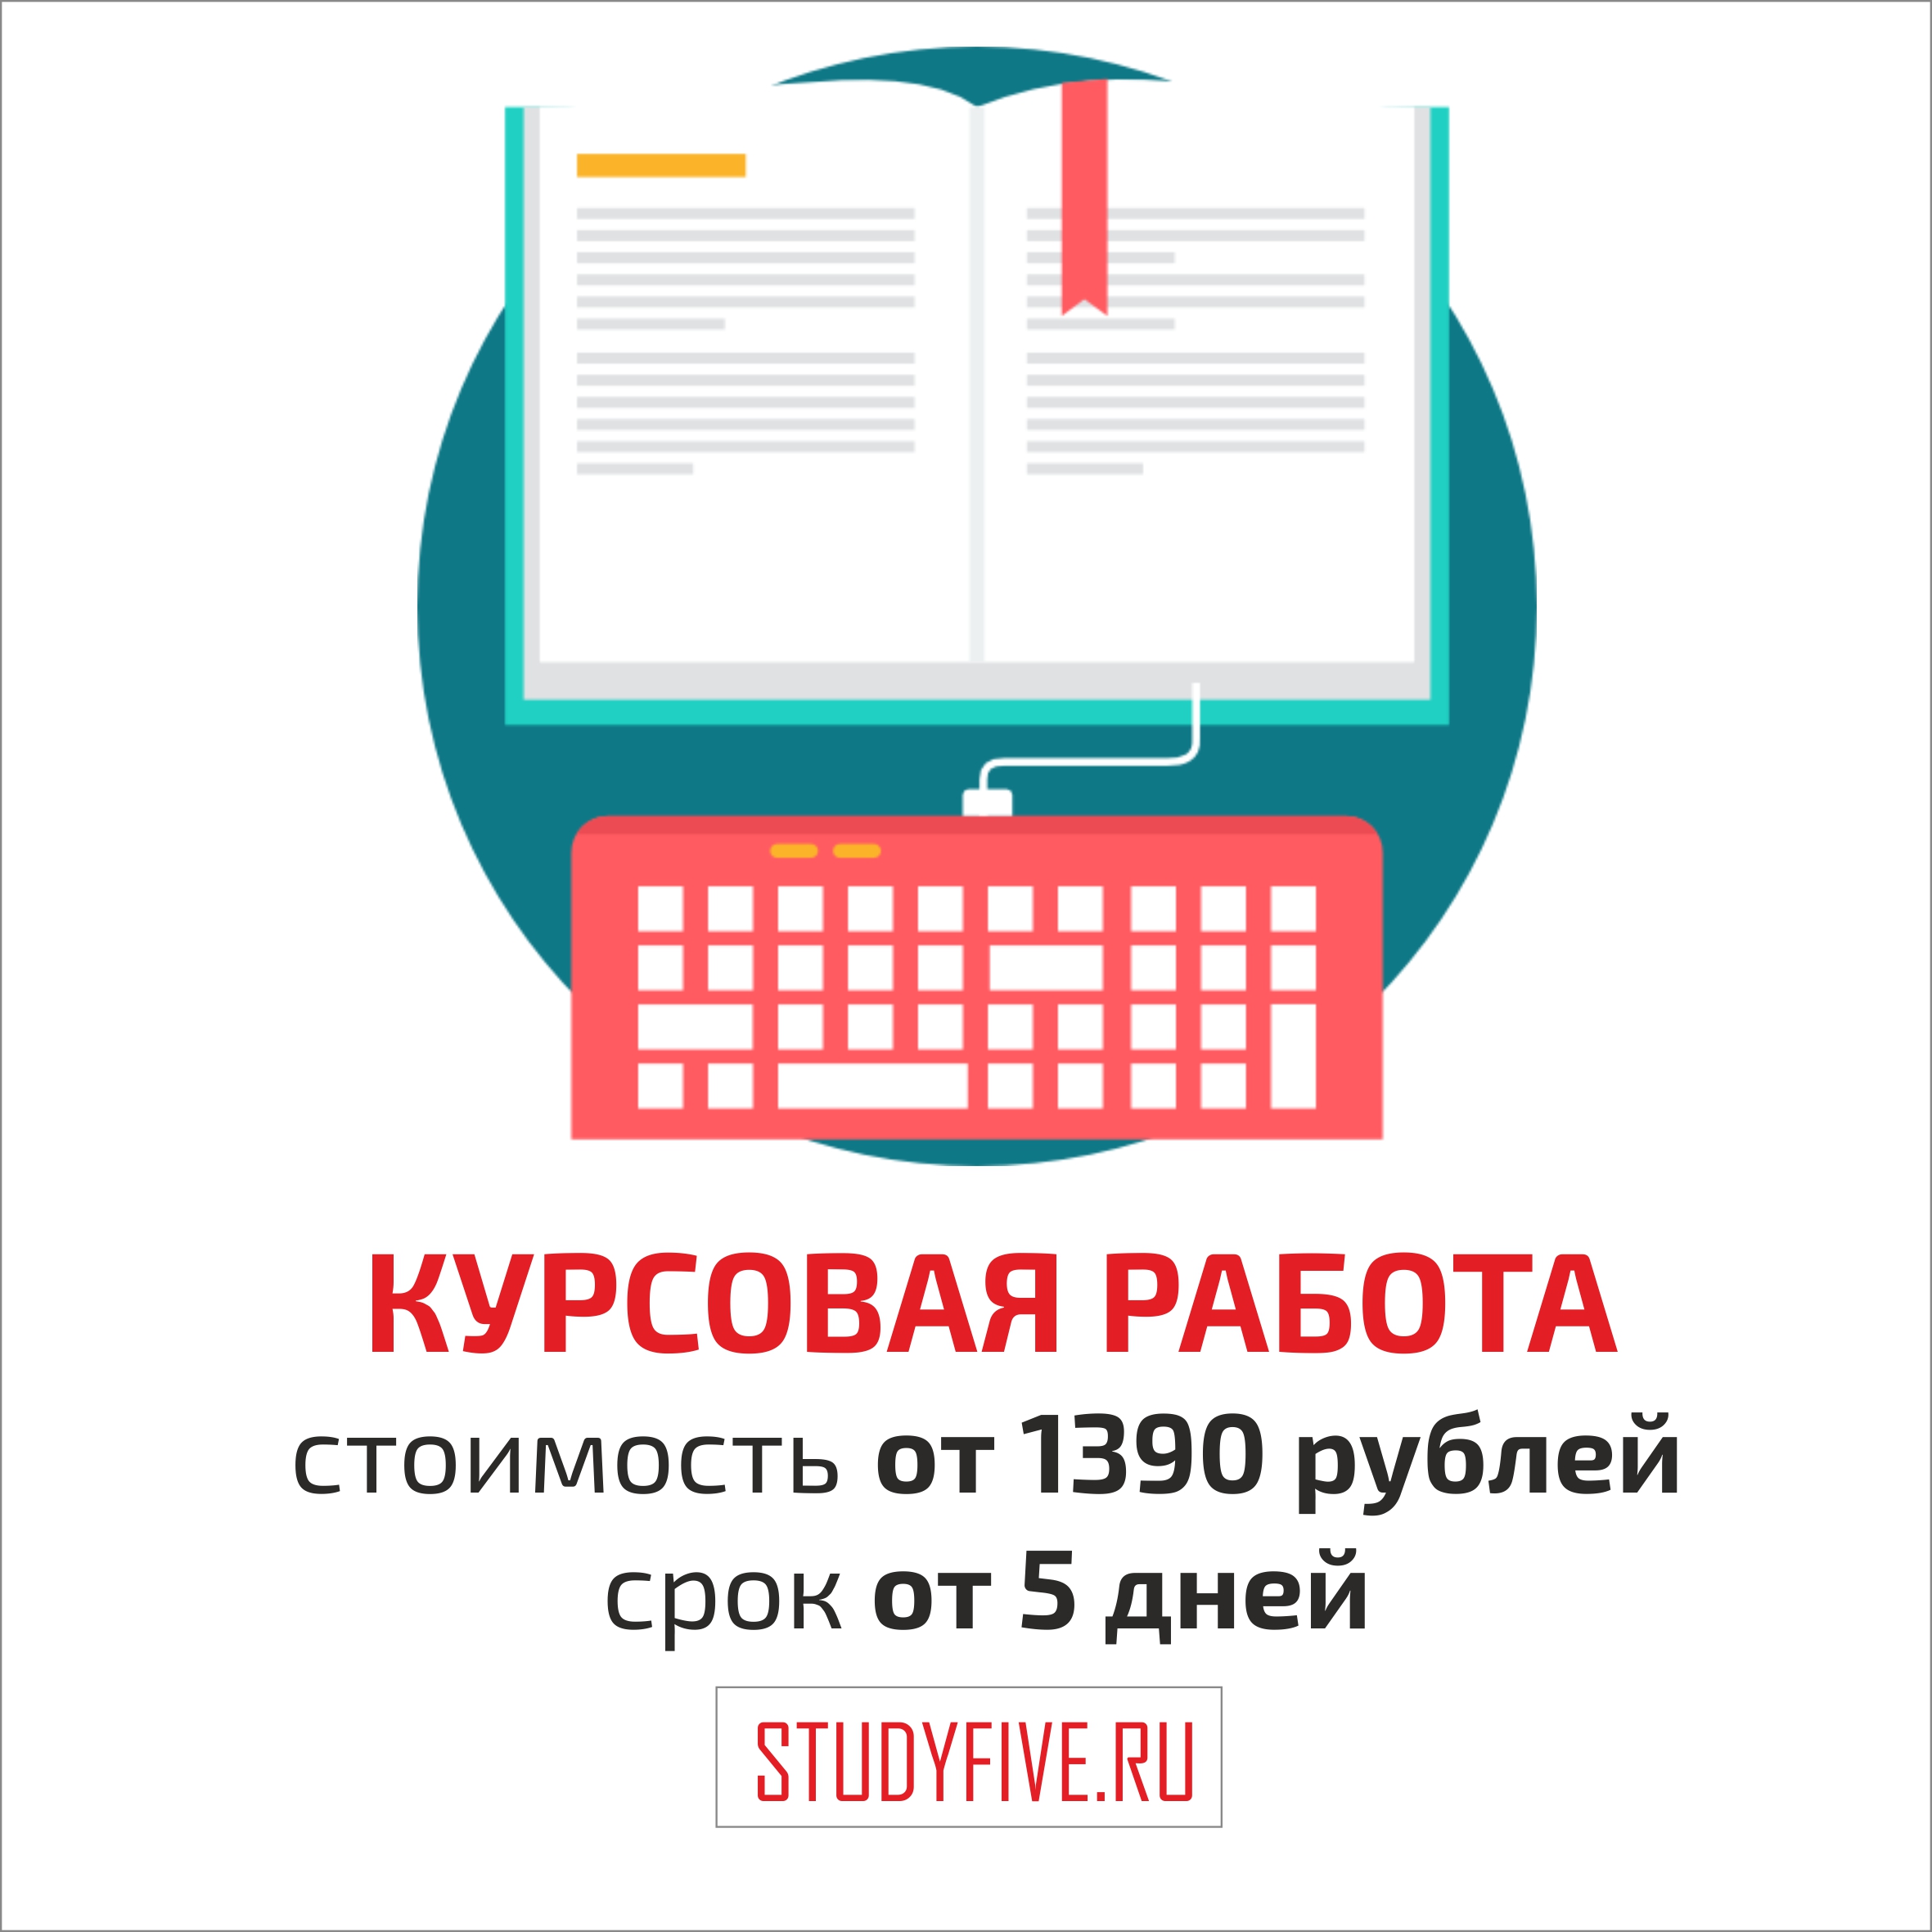 Как написать курсовую работу. инструкция - study365.ru